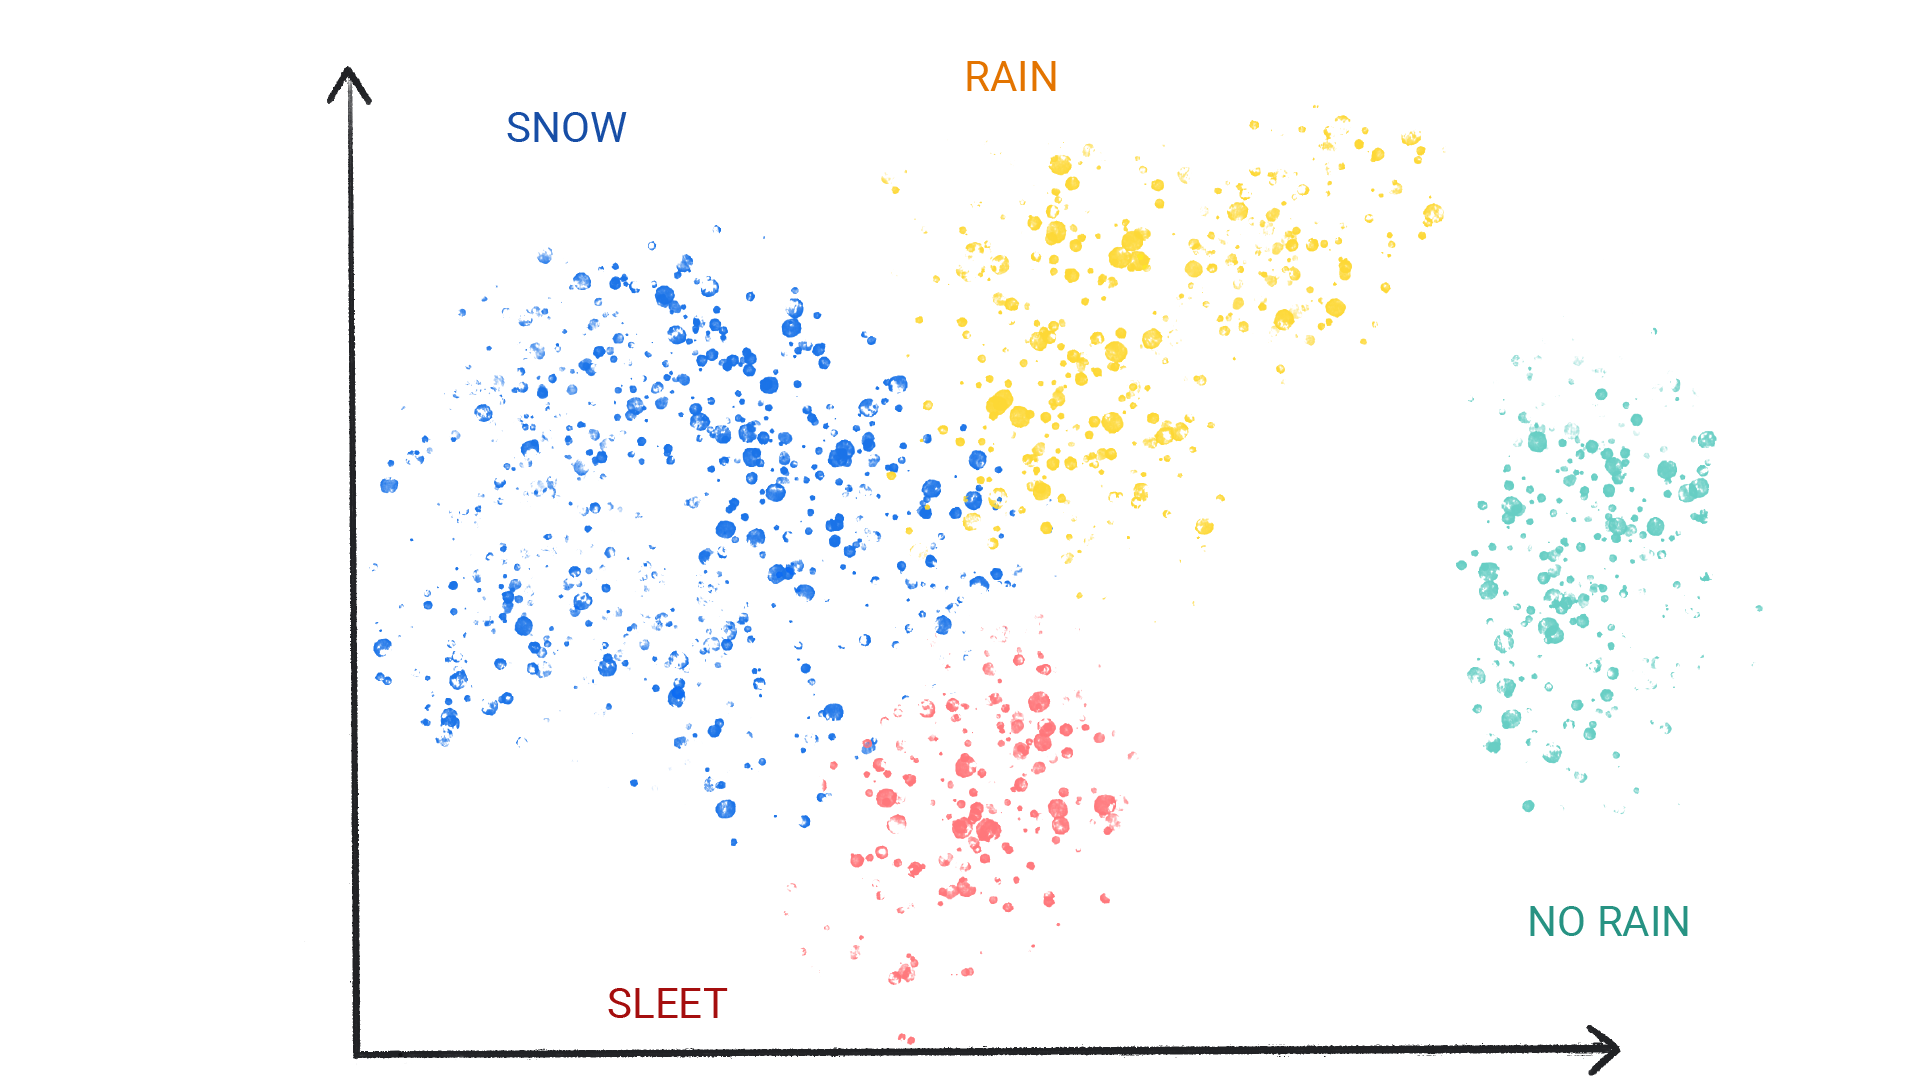 這張圖片顯示叢集中有不同顏色的點，分別標示為「雪」、「雨」、「冰雹」和「沒有雨」。